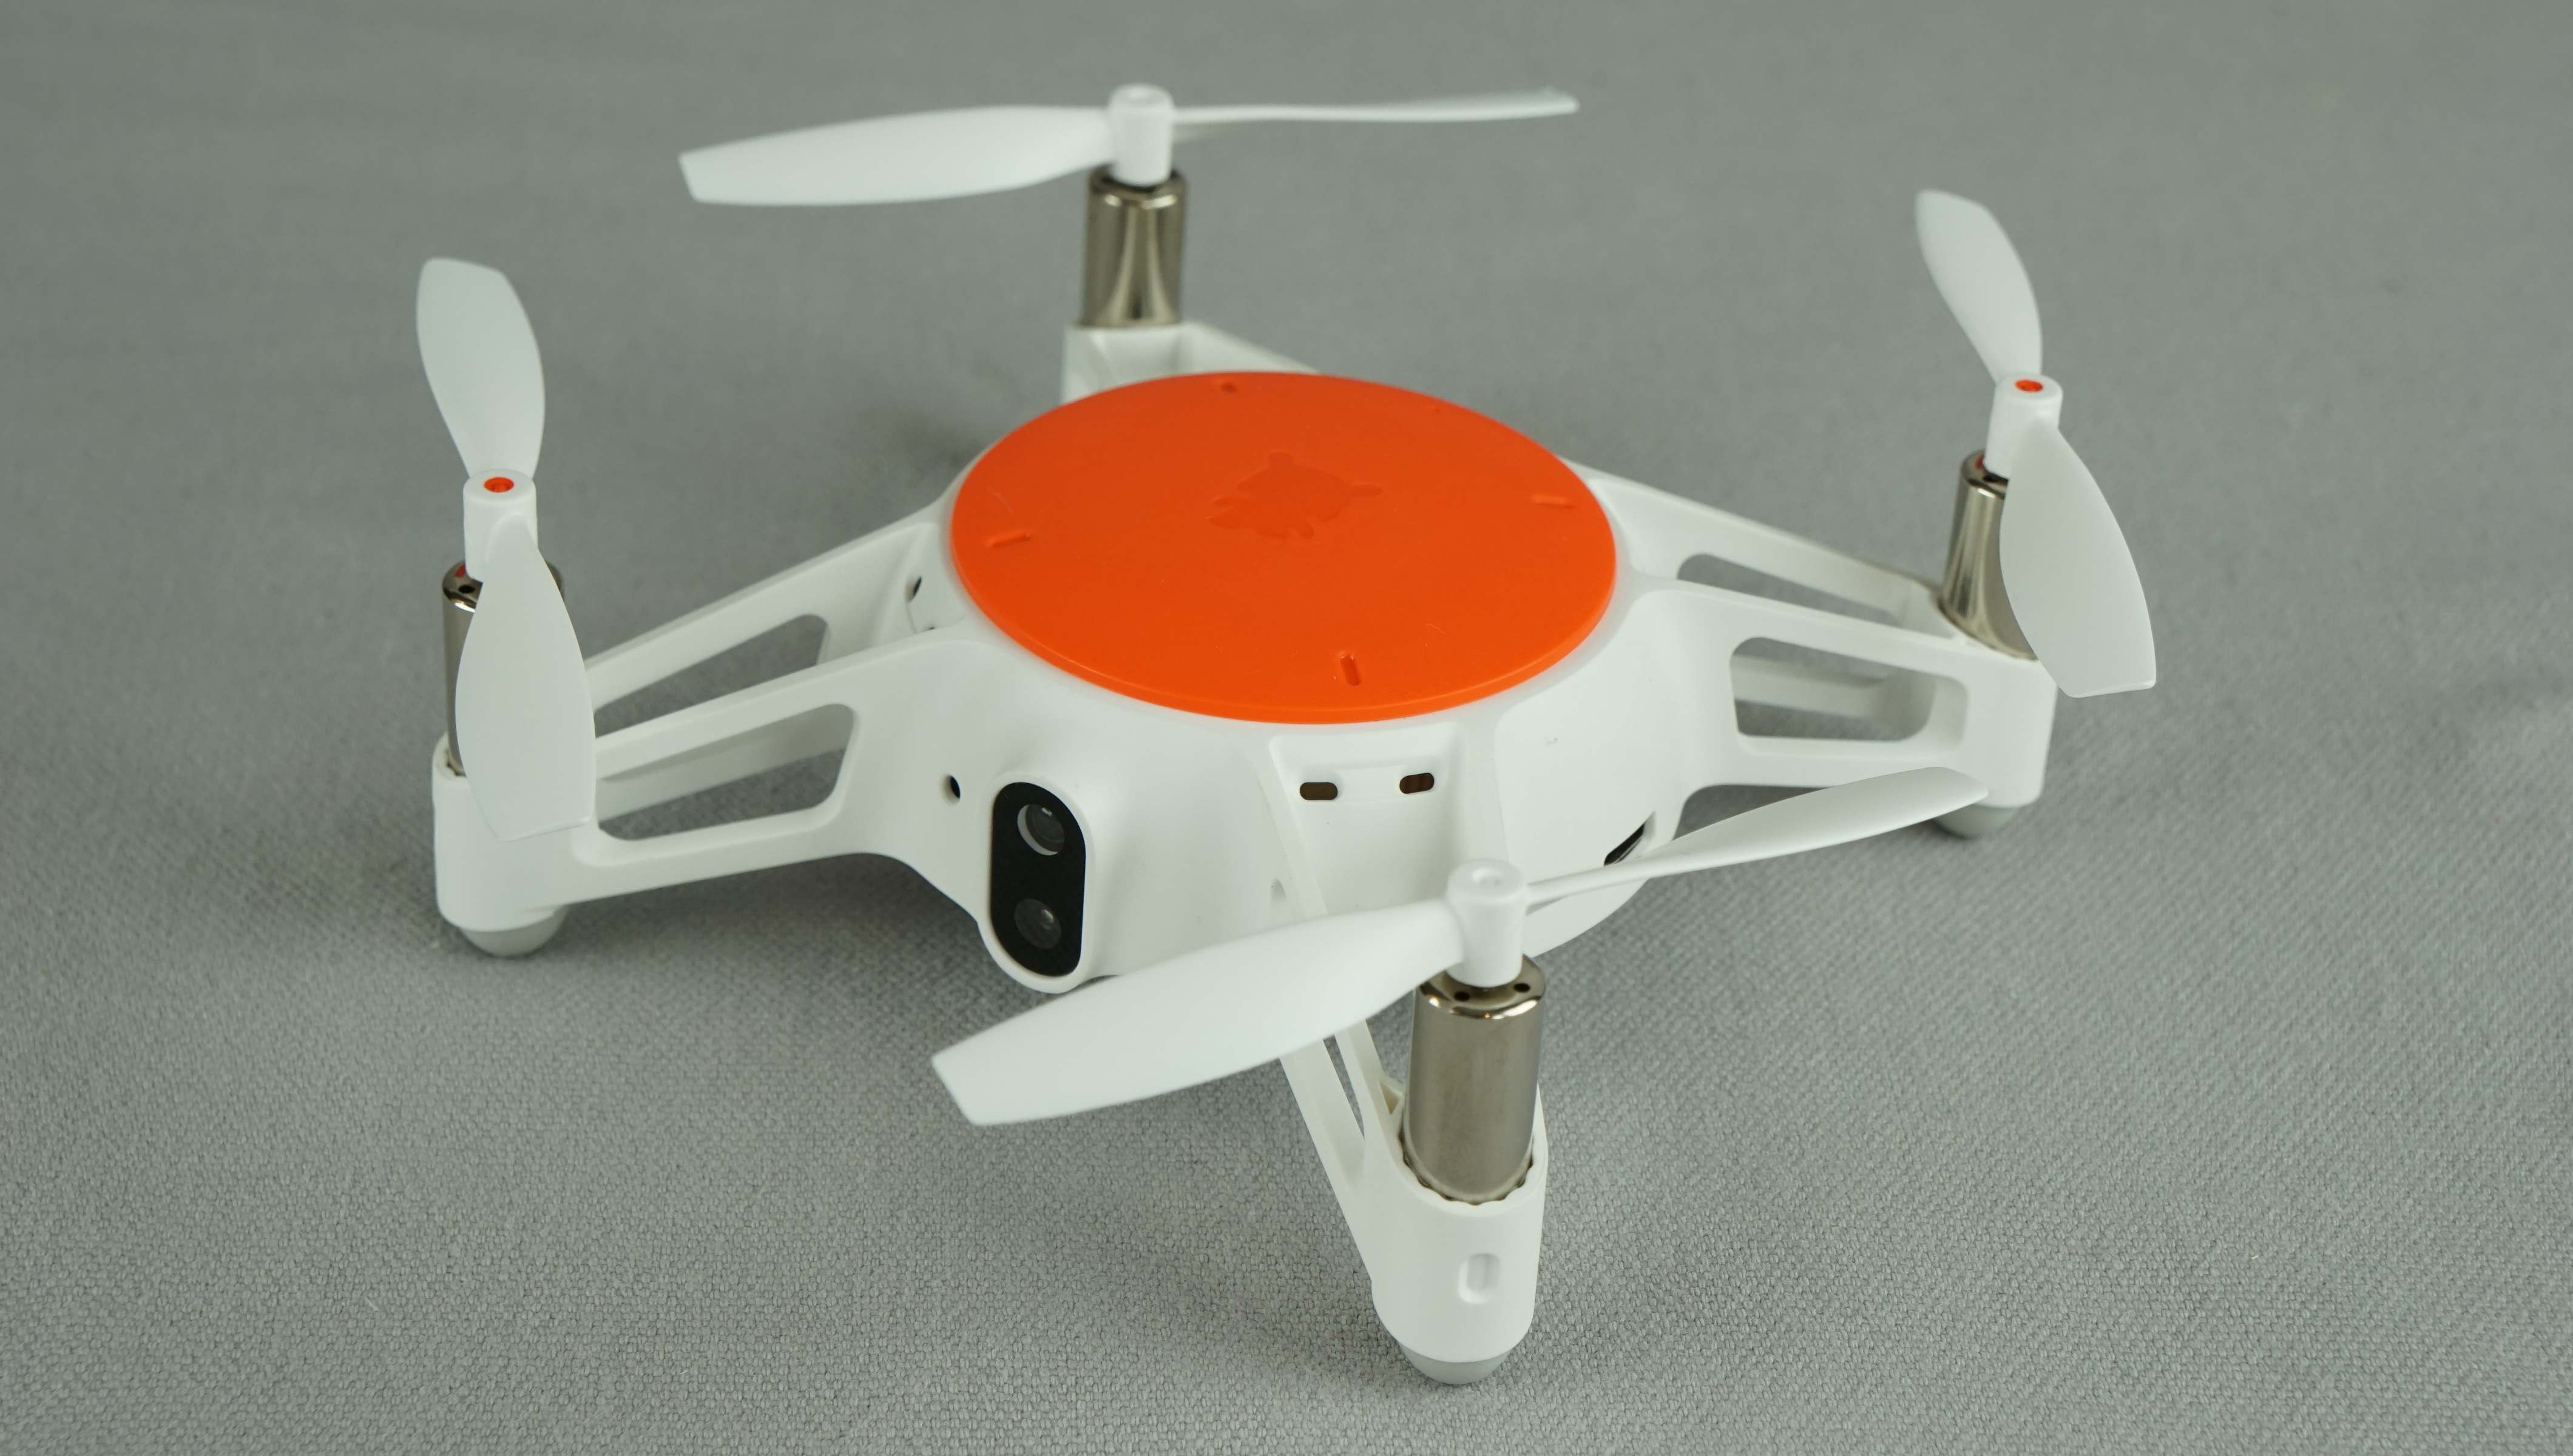 xiaomi mitu drone review